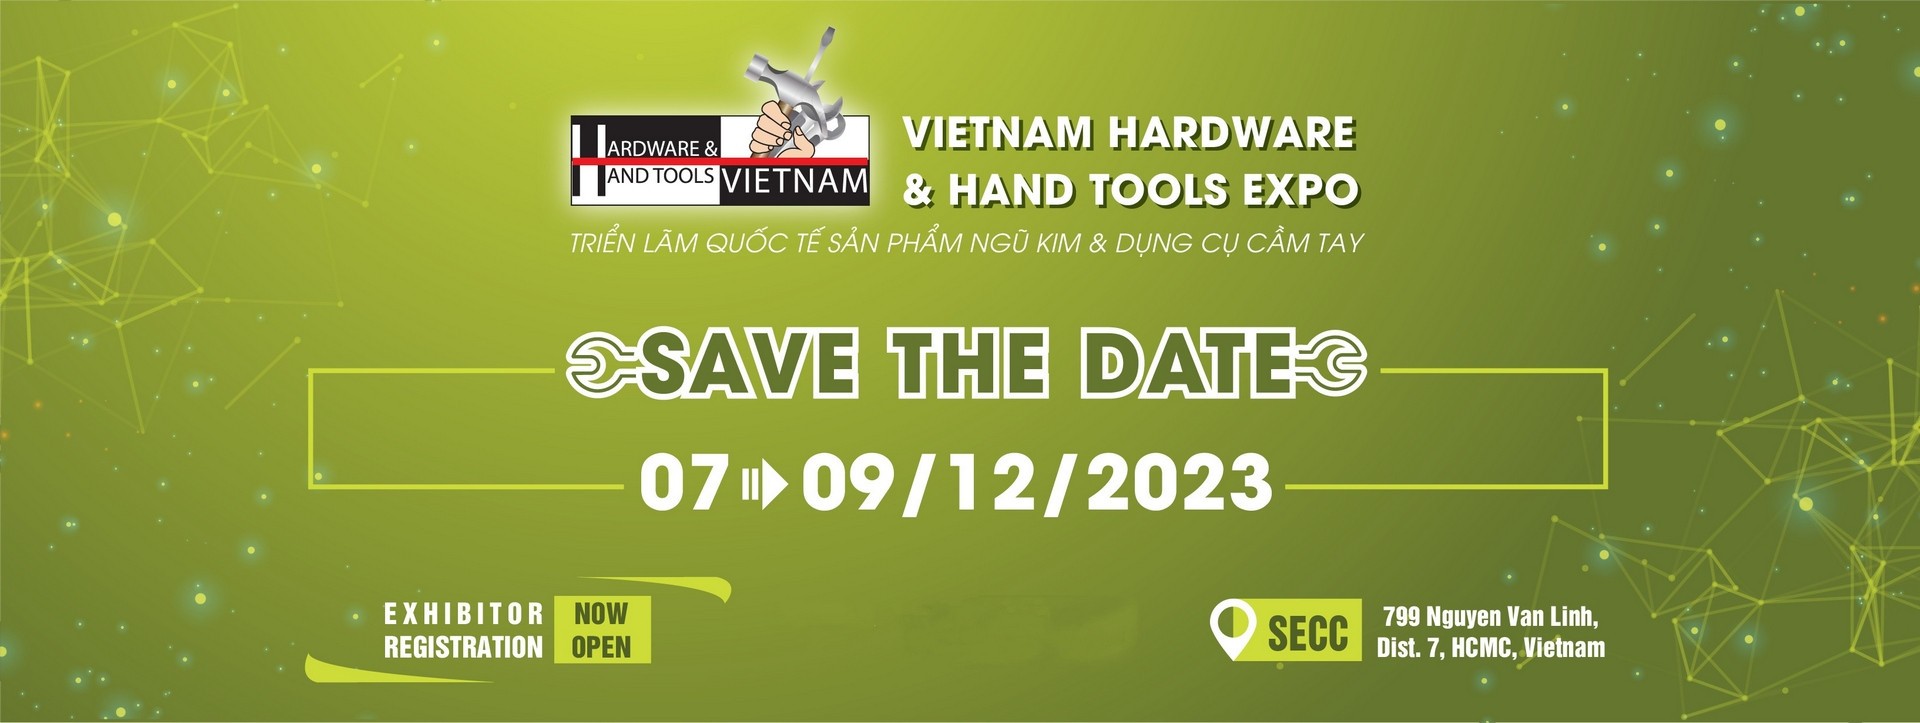 Vietnam Hardware & Hand Tools Expo 2023 - Triển lãm Quốc tế Sản phẩm Ngũ kim & Dụng cụ Cầm tay